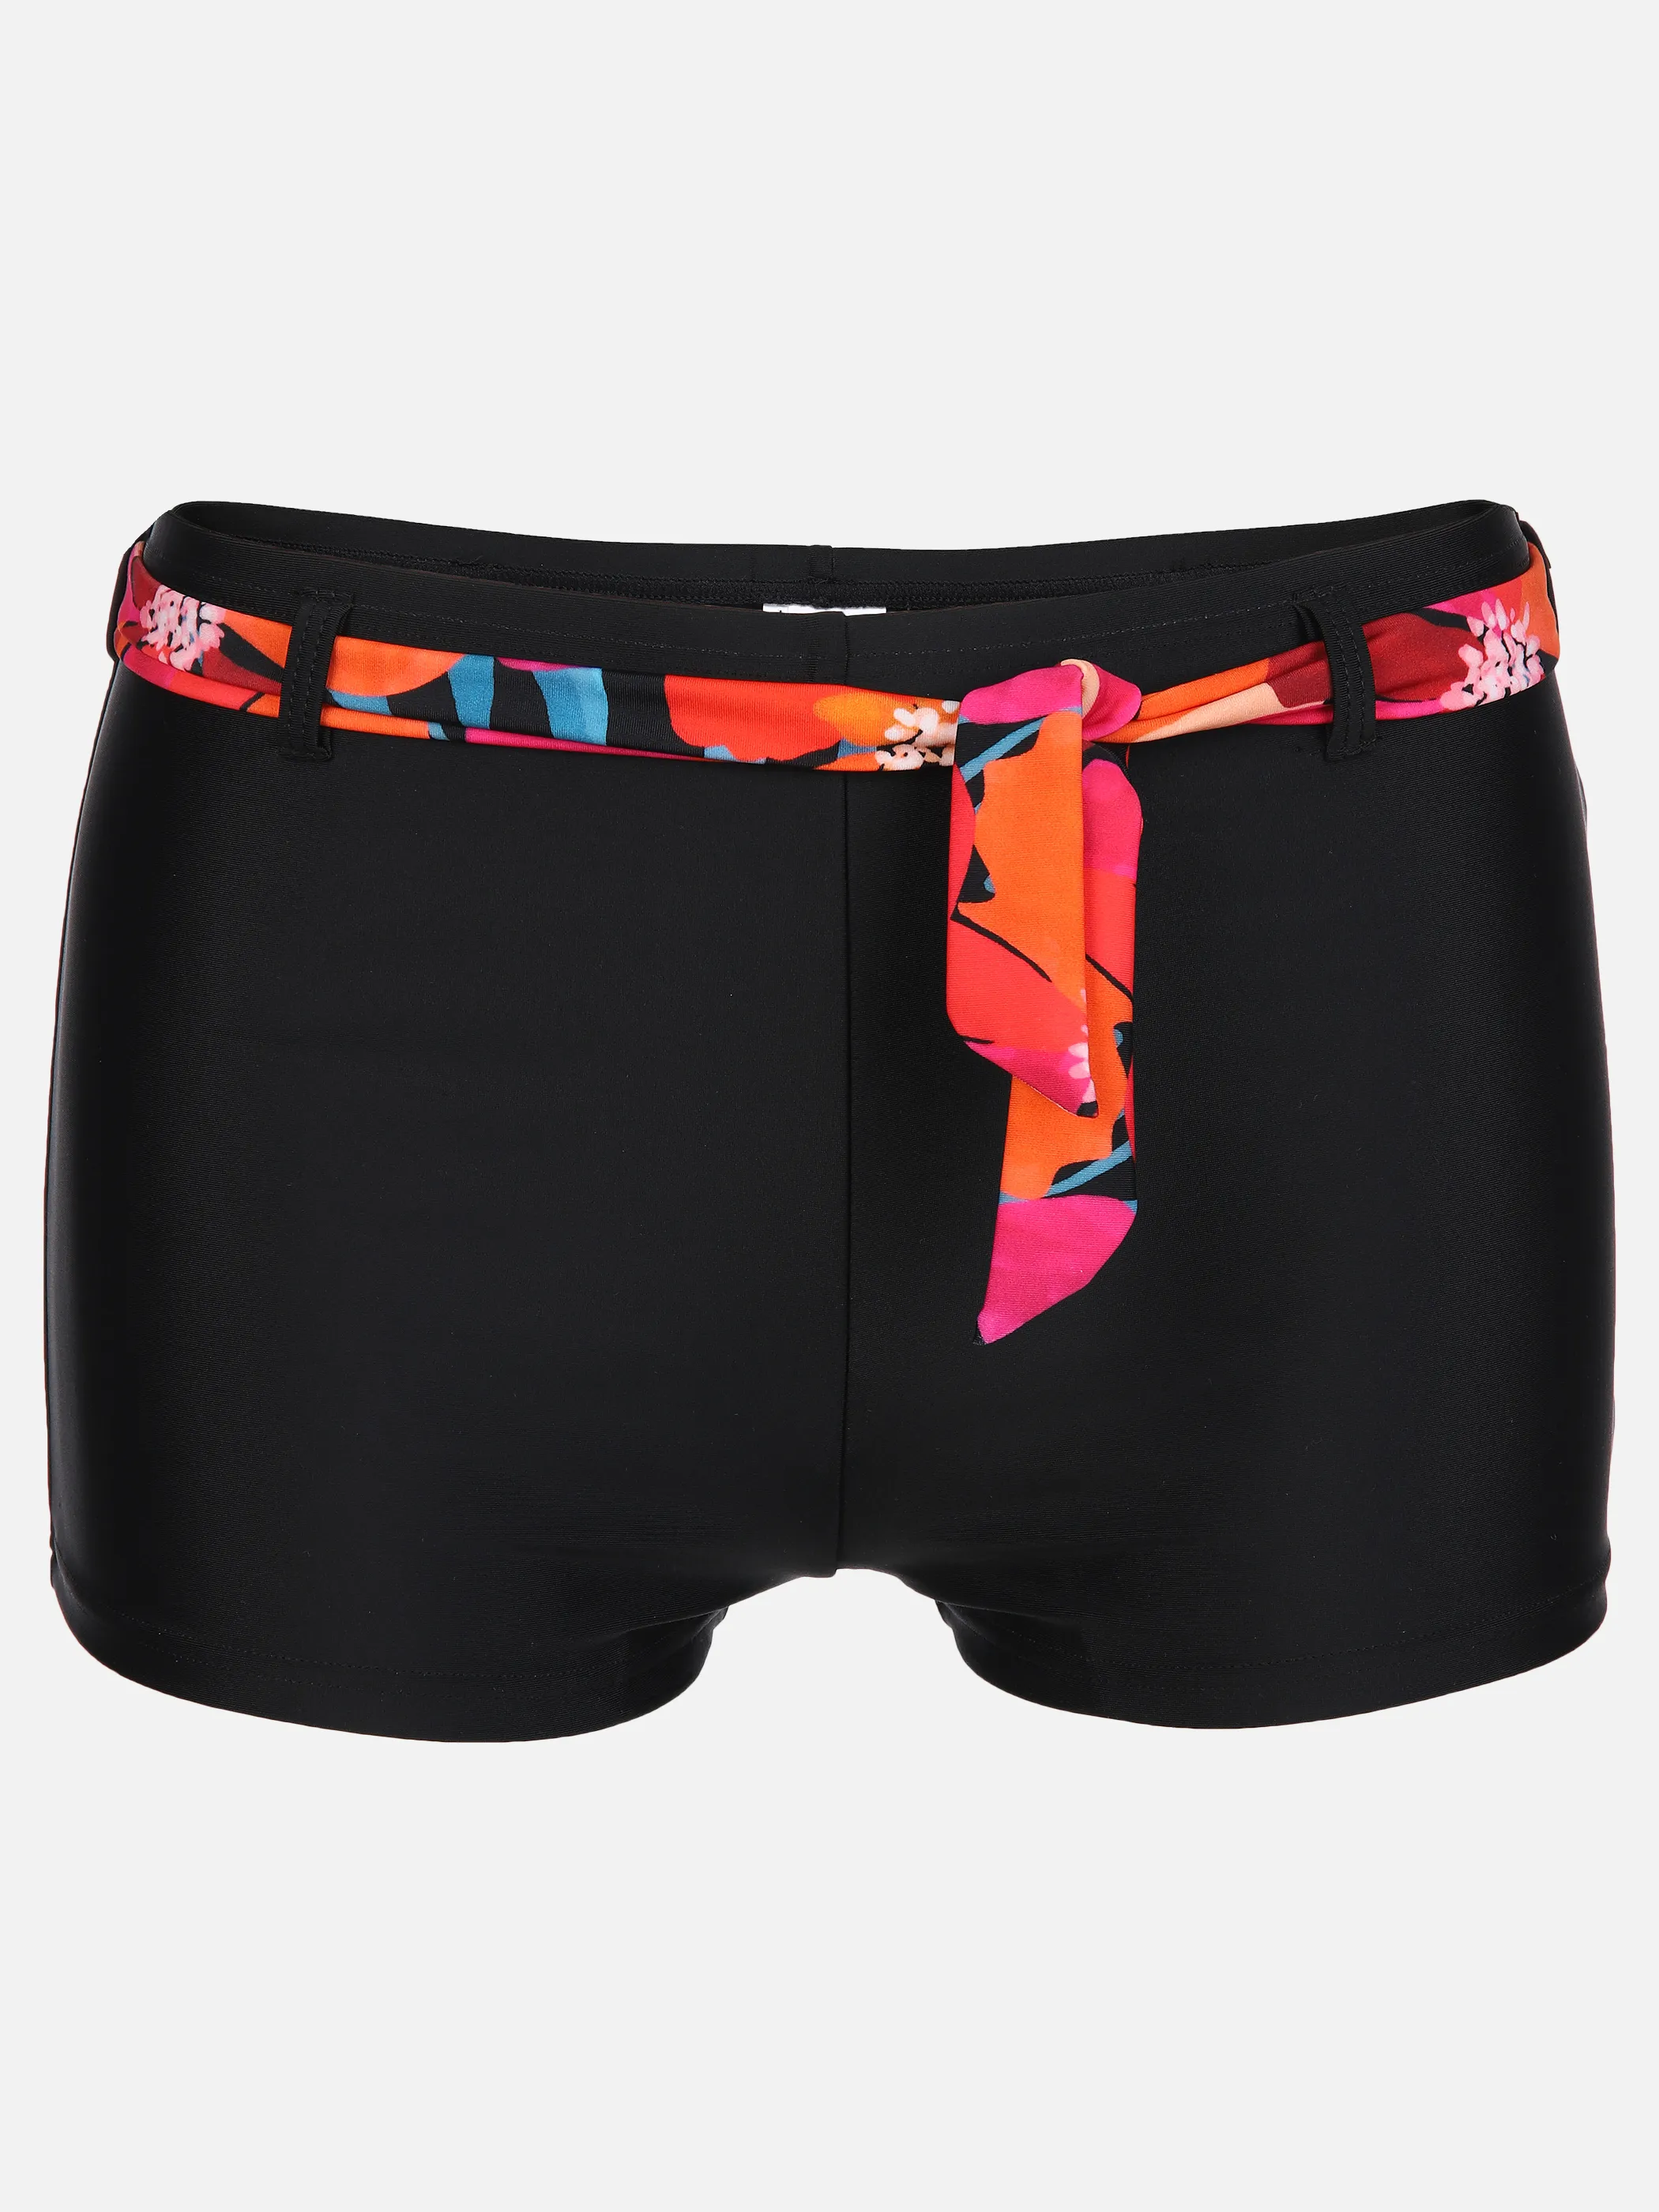 Grinario Sports Da-Bikini Shorts mit Bindeband Schwarz 890116 BLACK/AOP 1